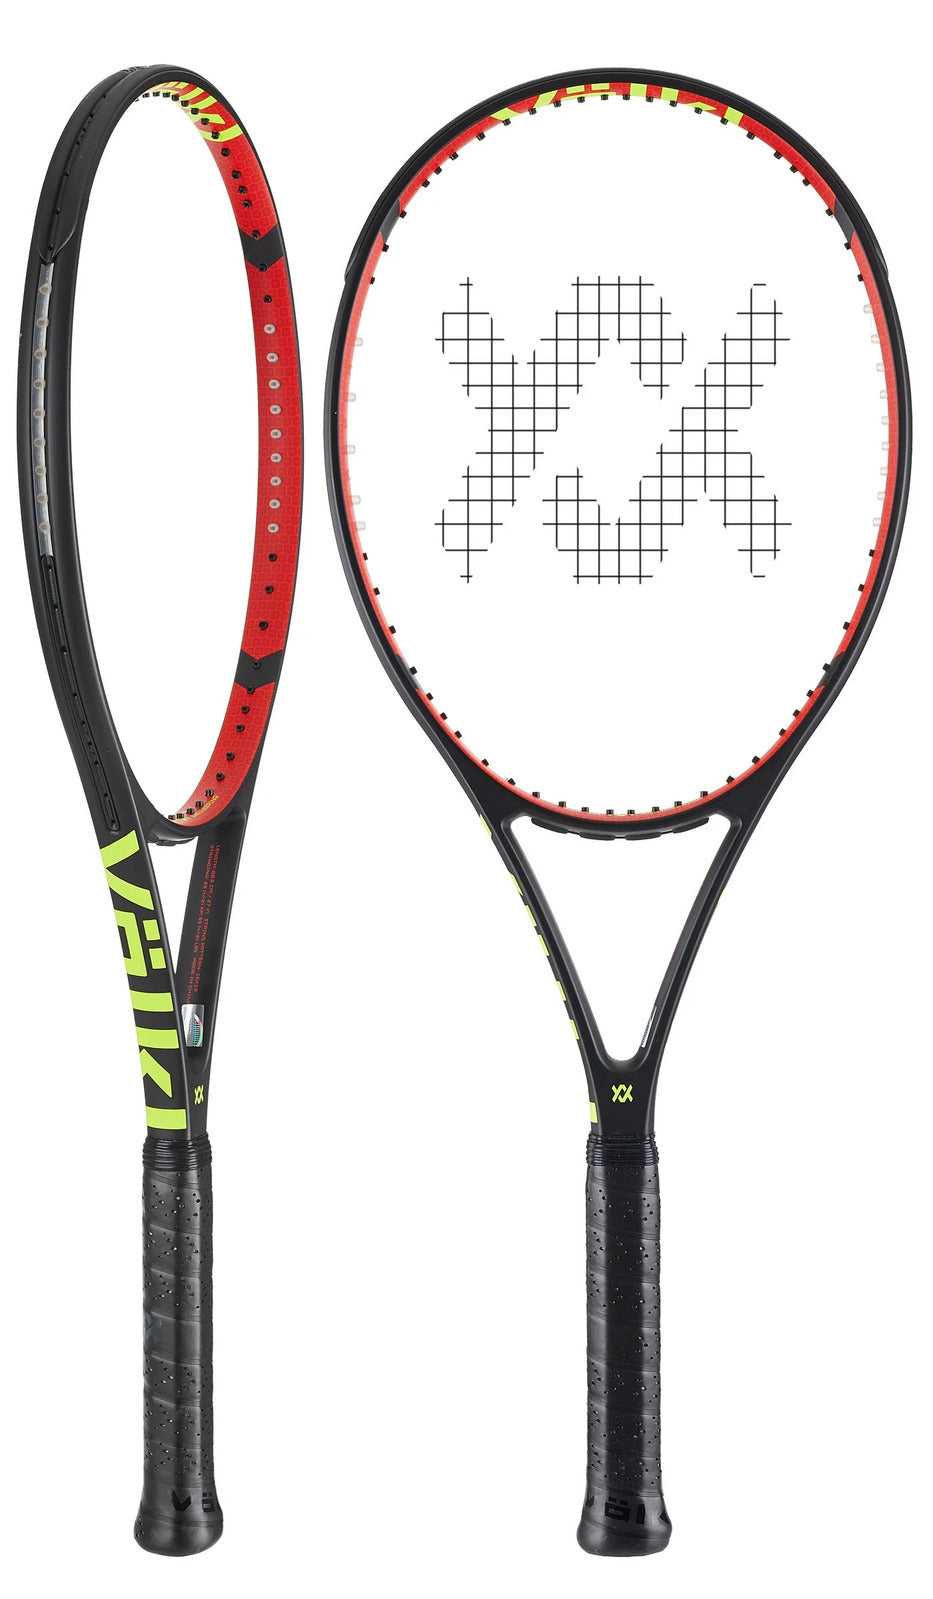 V-CELL 8 315g Tennis Racquet Racket - Unstrung - 4 3/8